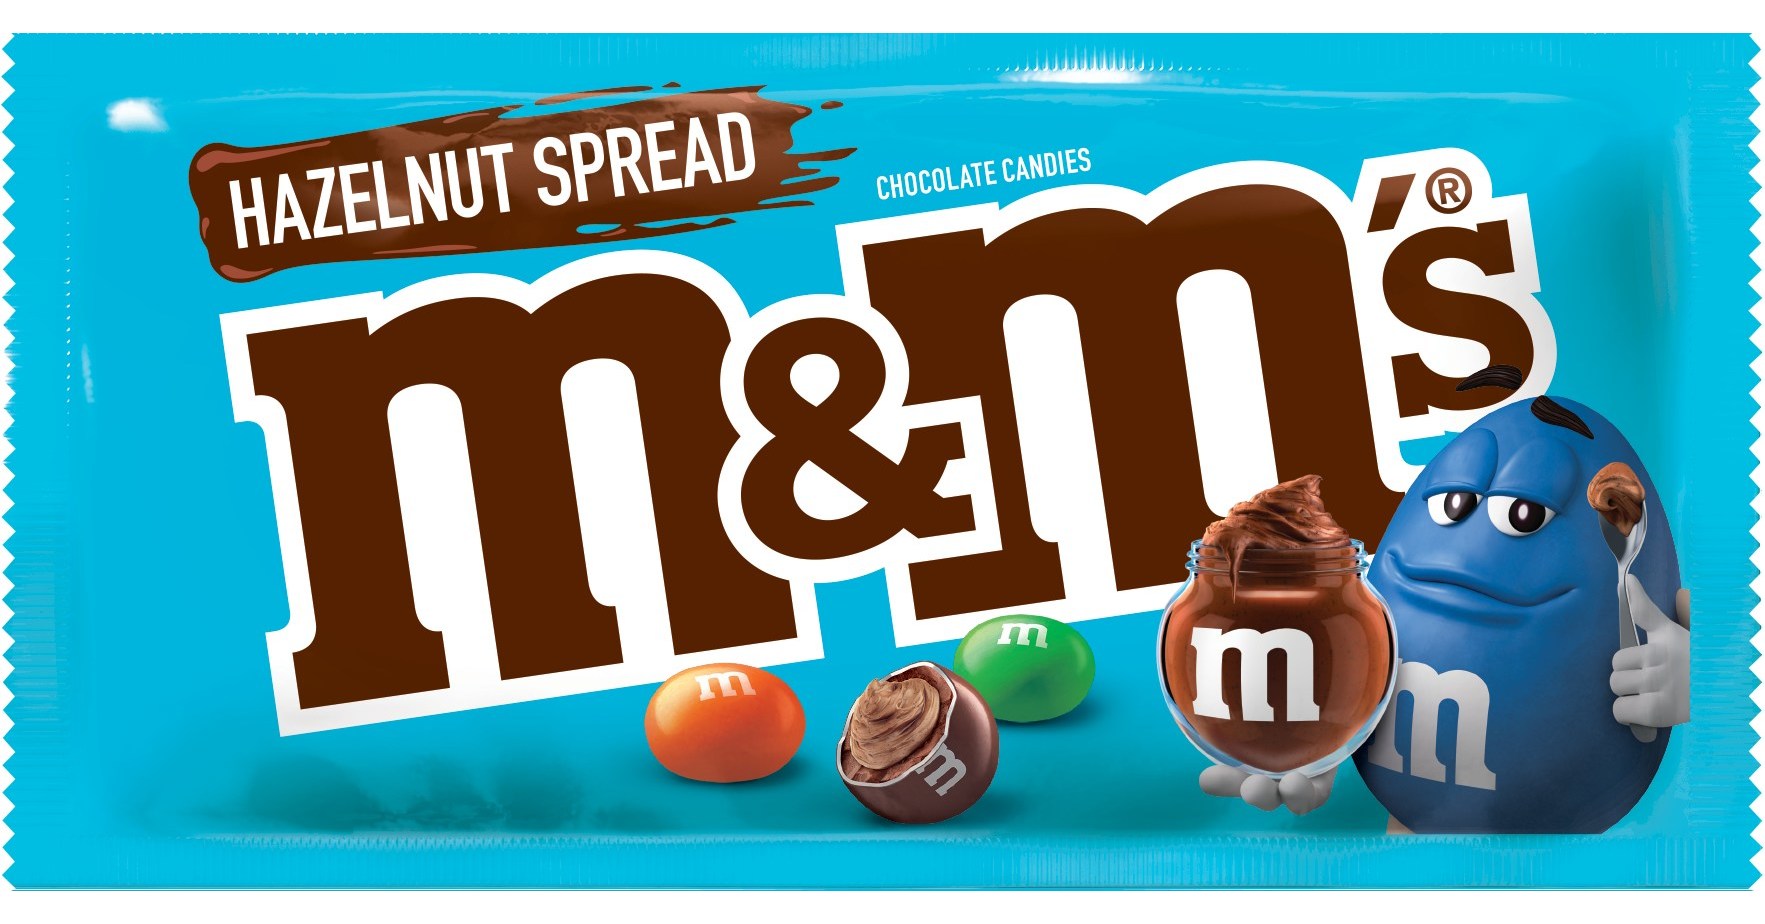 M&M Dark Chocolate Candies - Mars M&M's Candy Taste Test Series